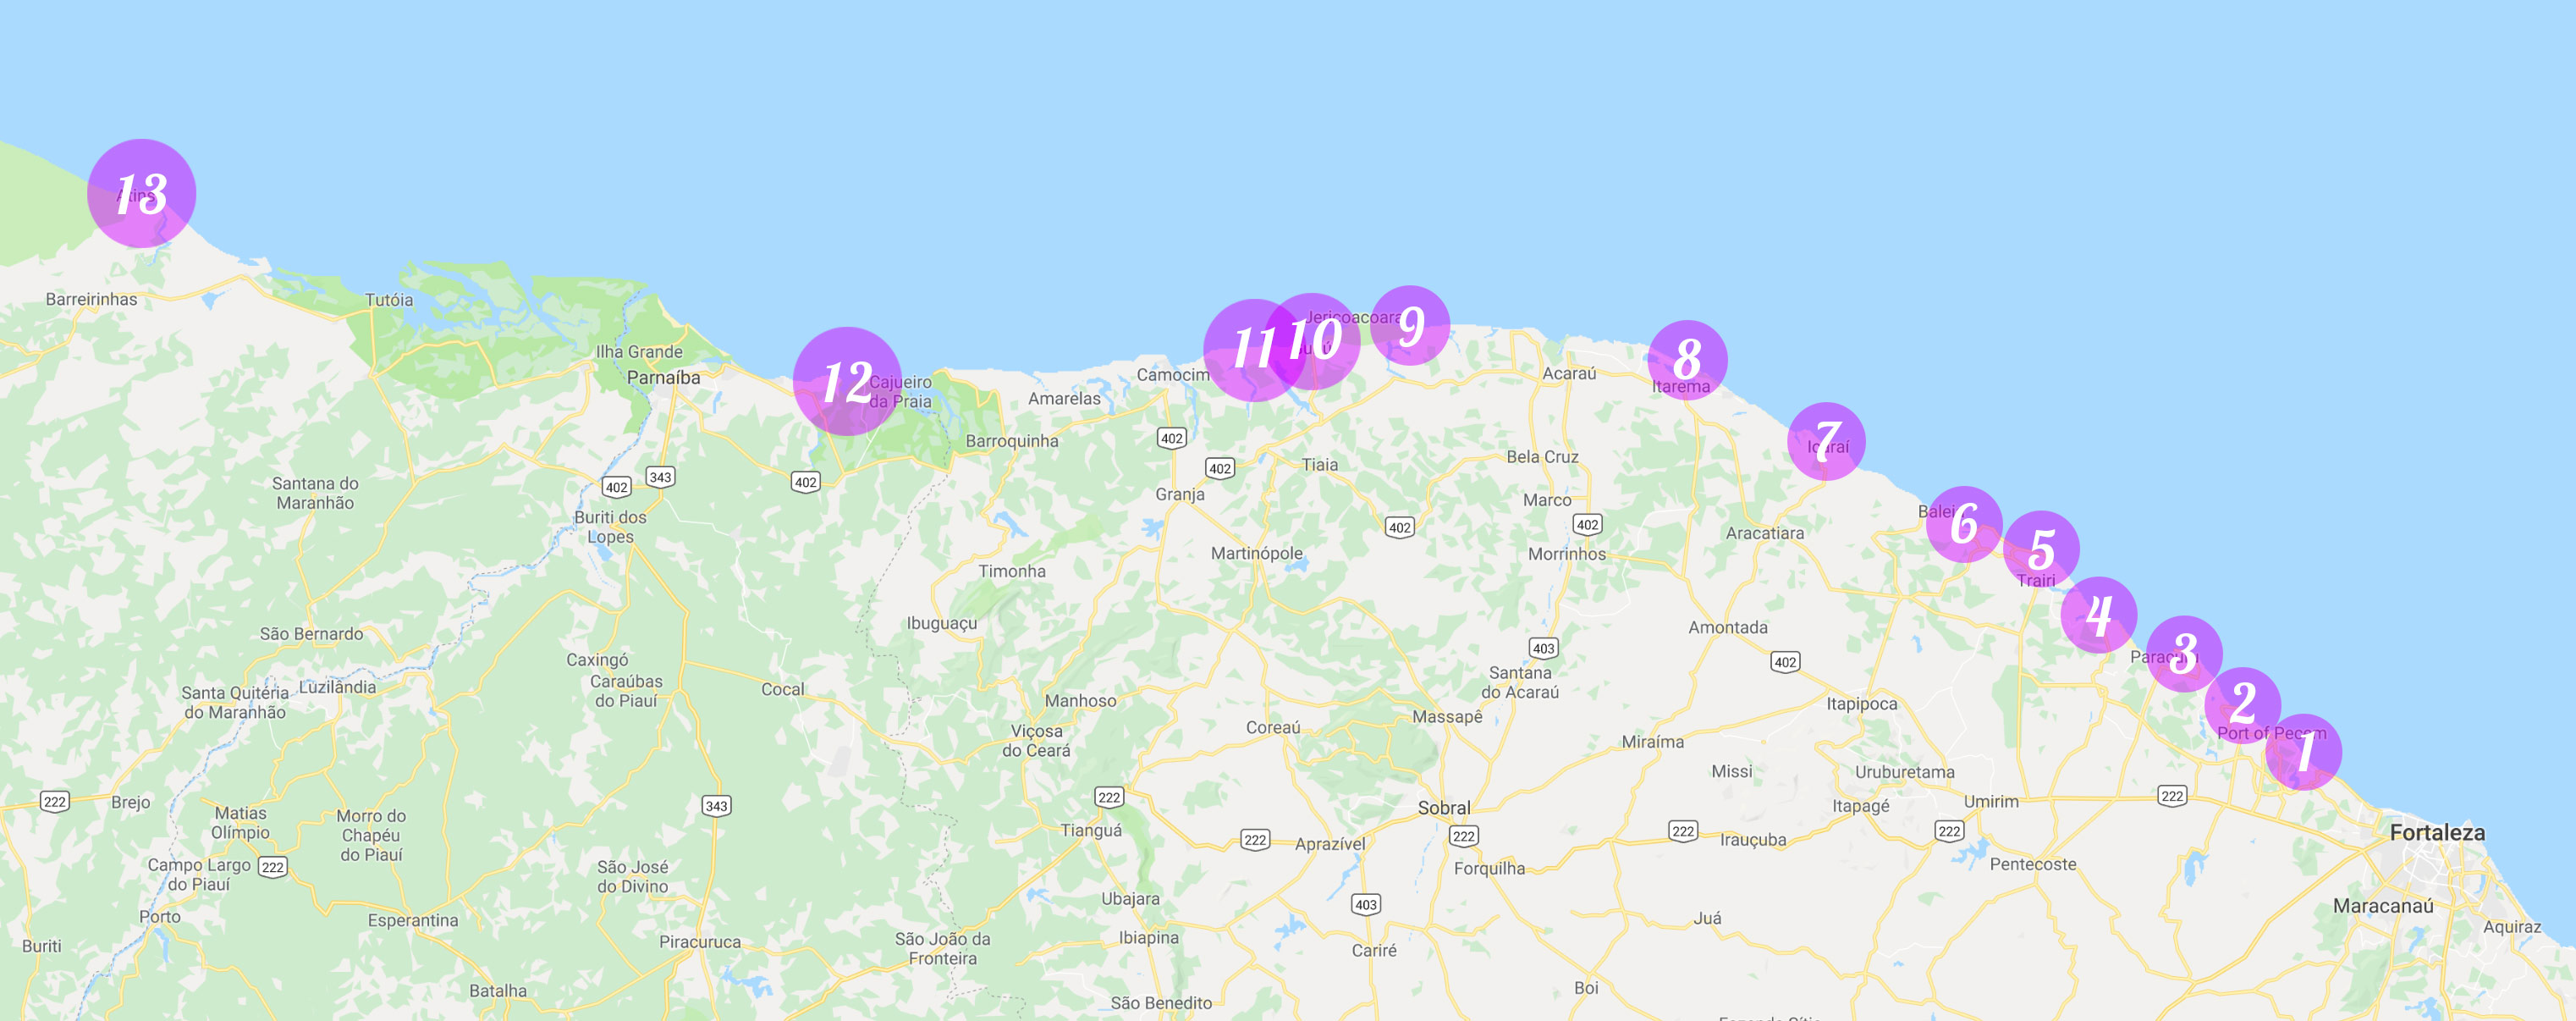 Karta över kite spots i norra Brasilien